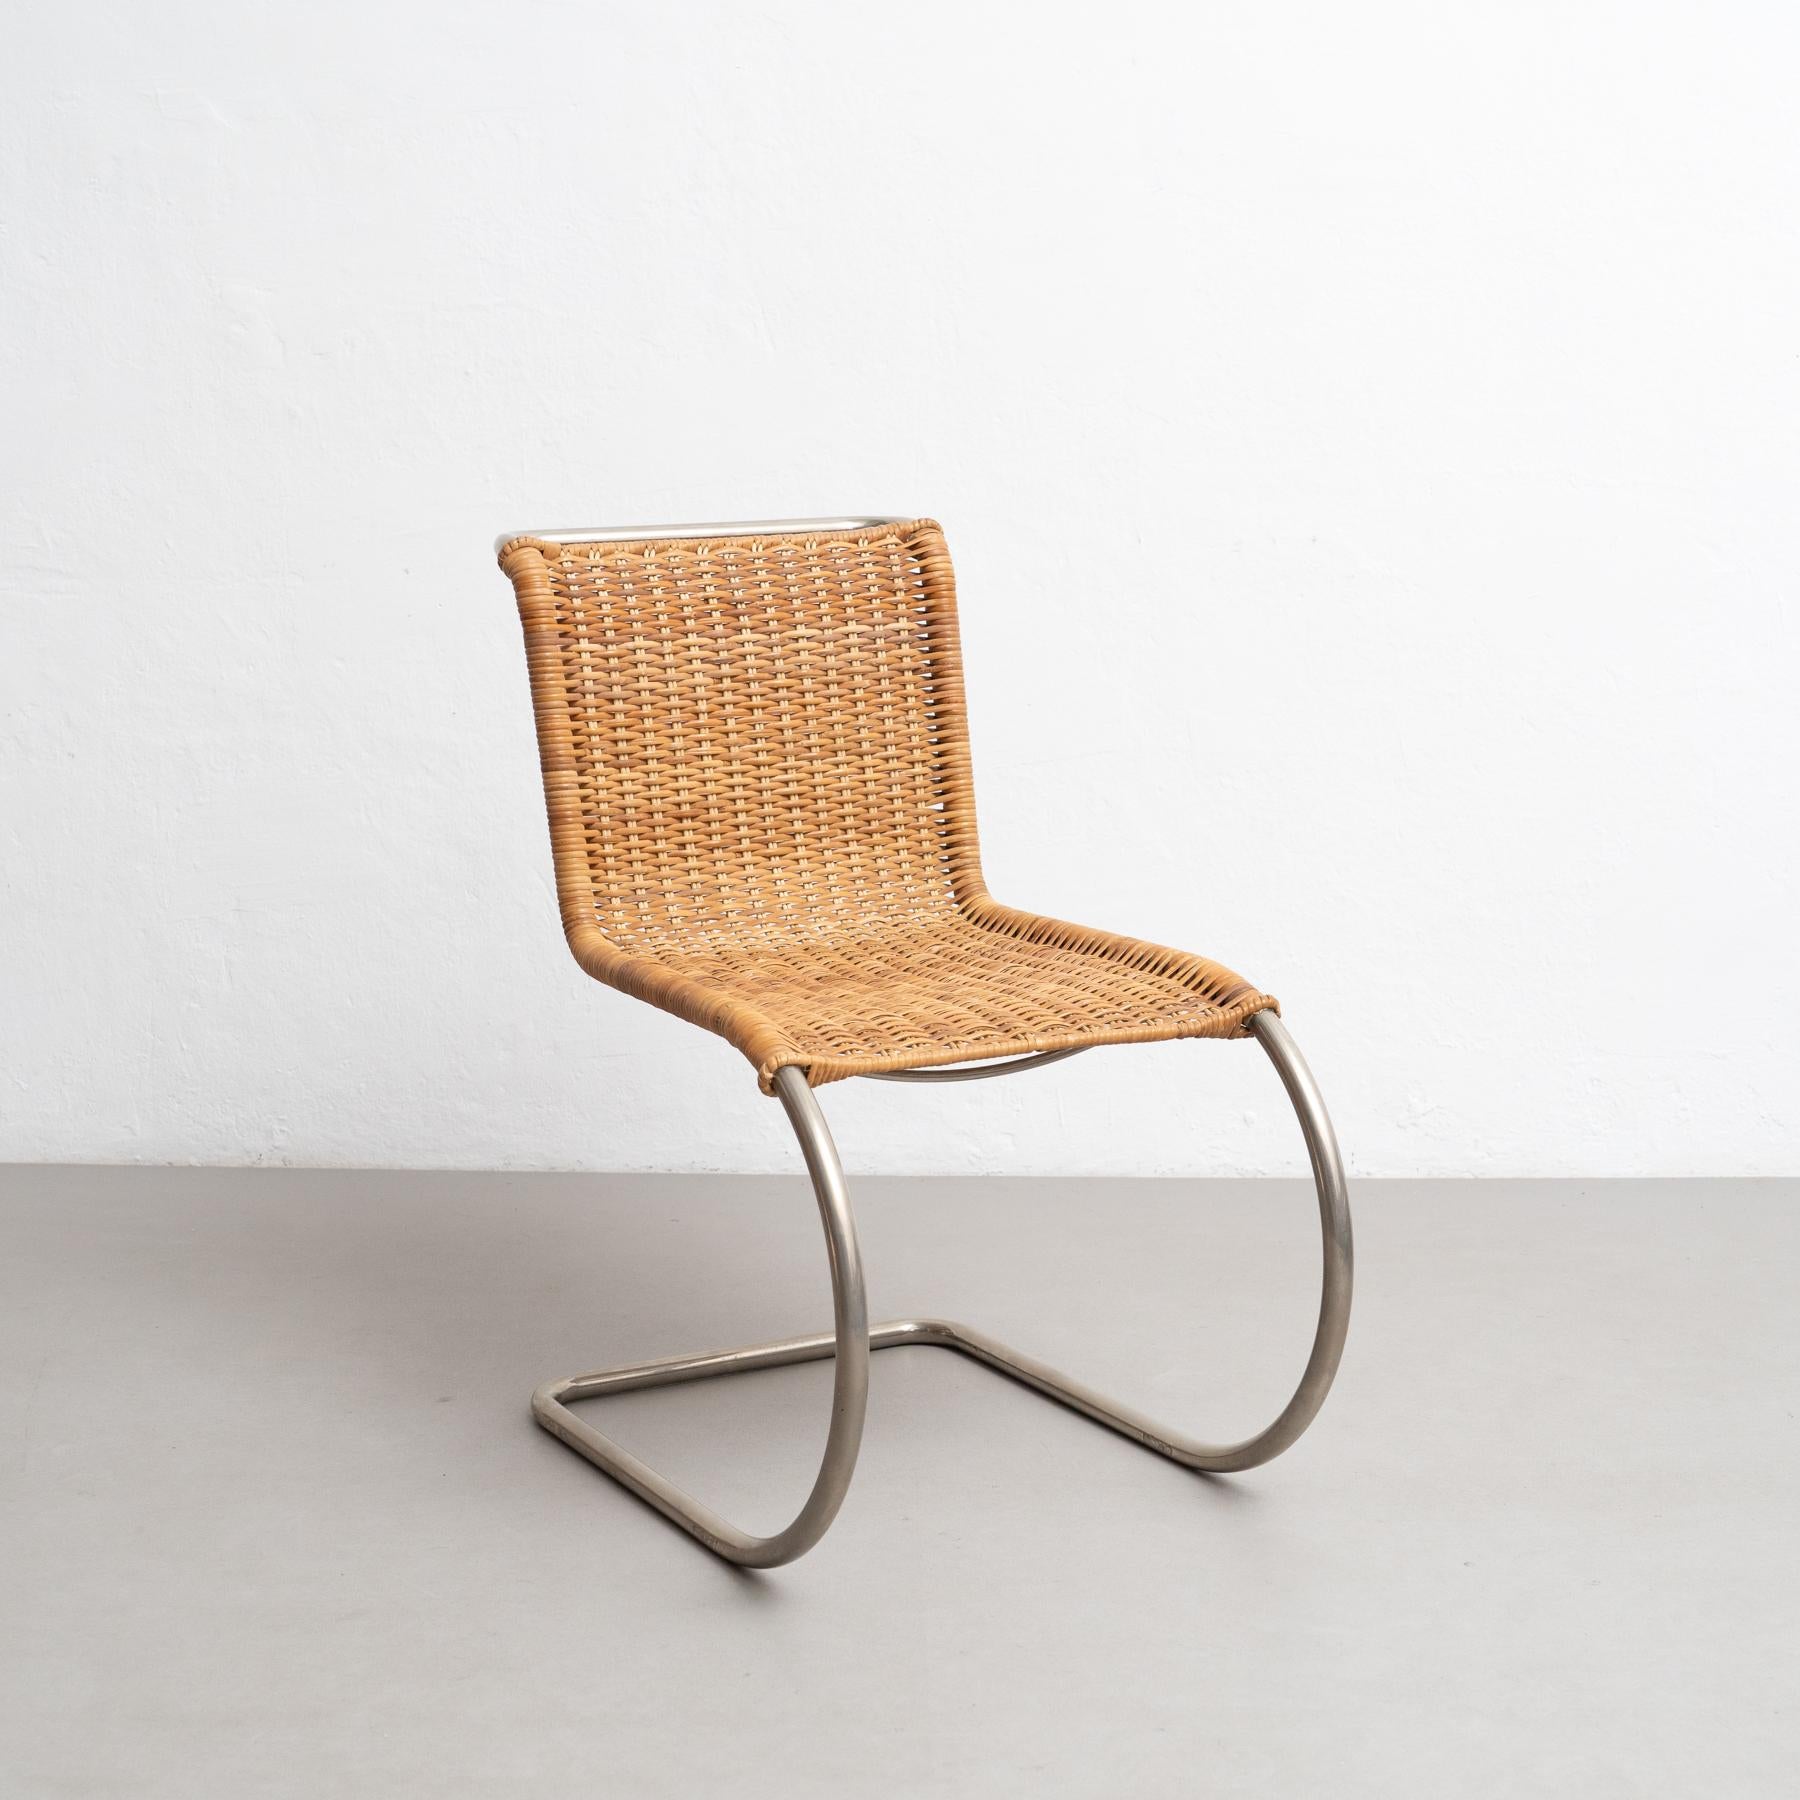 Cette chaise MR10 conçue par Ludwig Mies van der Rohe en 1927 est un véritable chef-d'œuvre du design moderne. Fabriquées par Tecta en Allemagne vers 1960, ces chaises témoignent de la popularité durable des designs innovants et intemporels de Mies